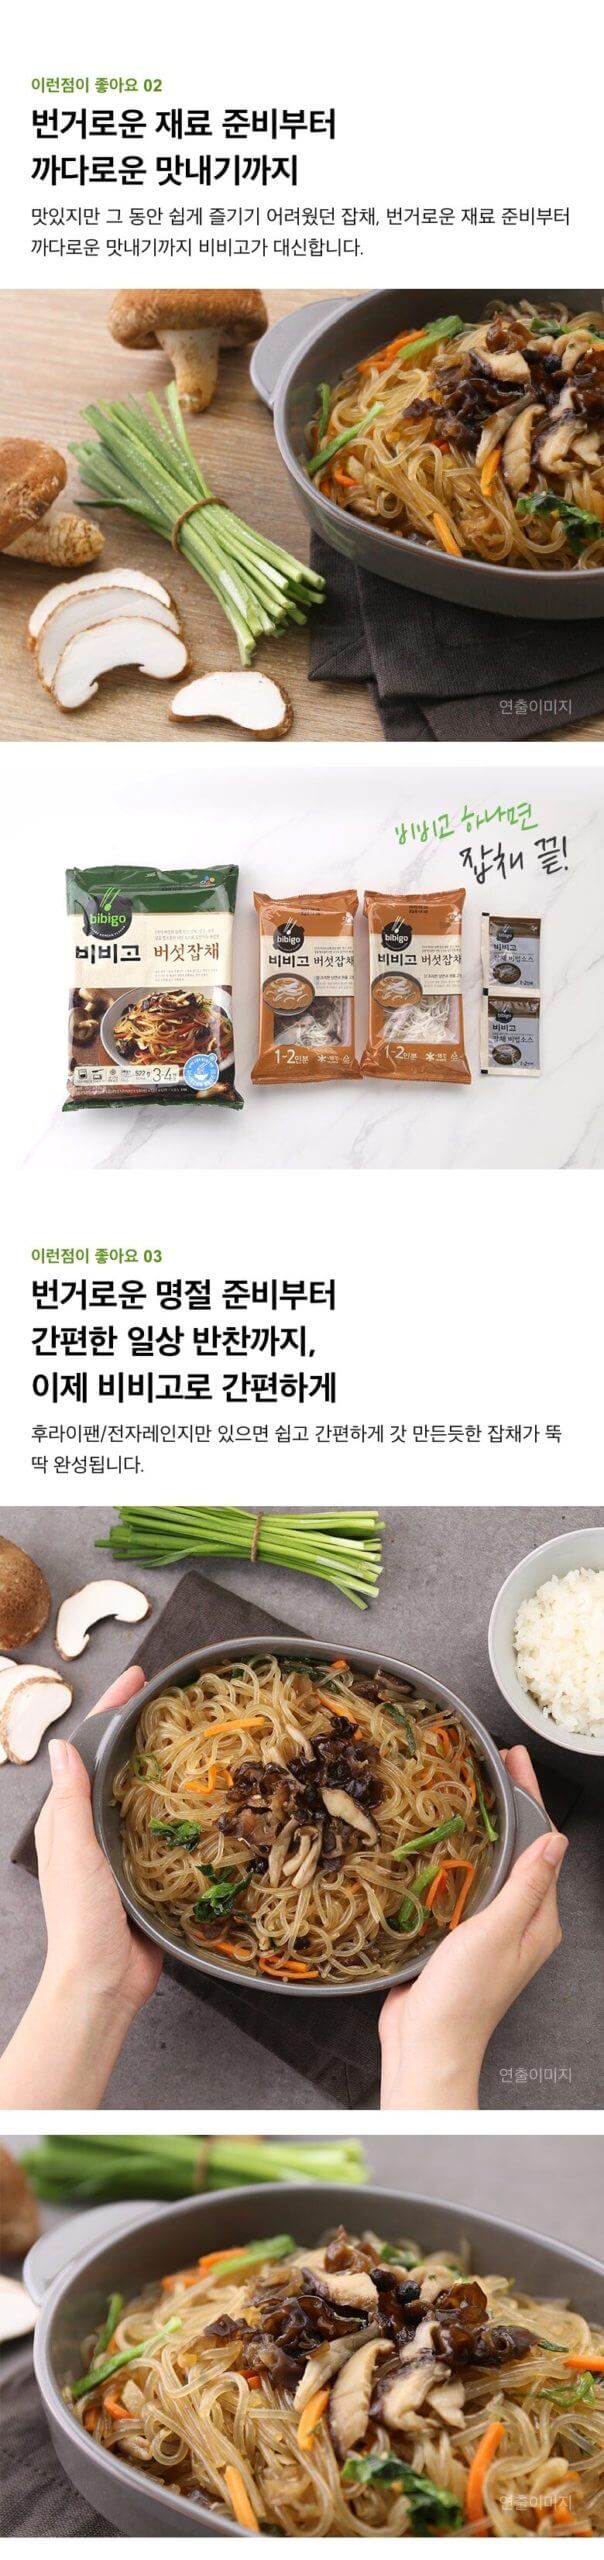 韓國食品-[CJ] Bibigo蘑菇粉絲 522g